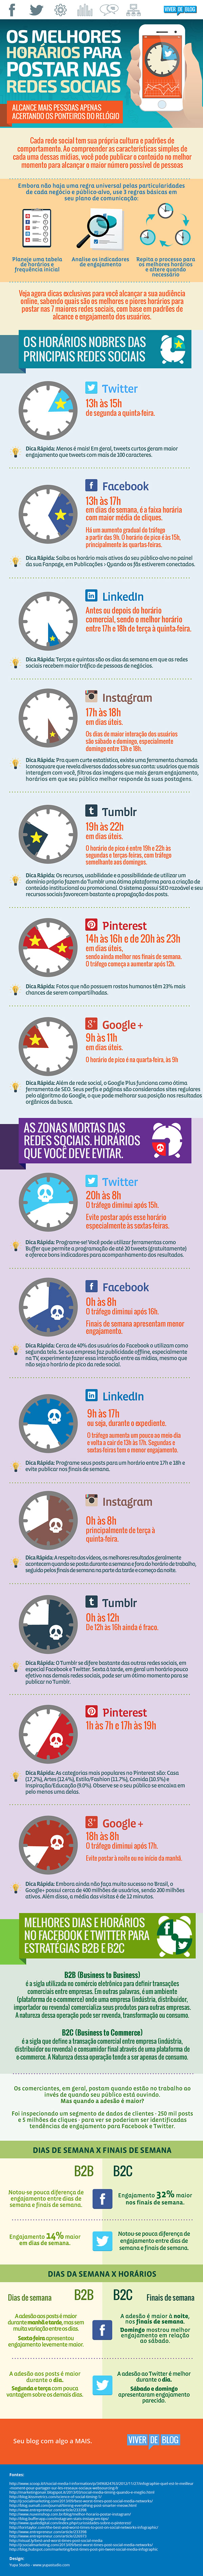 infografico-horarios-socialmedia